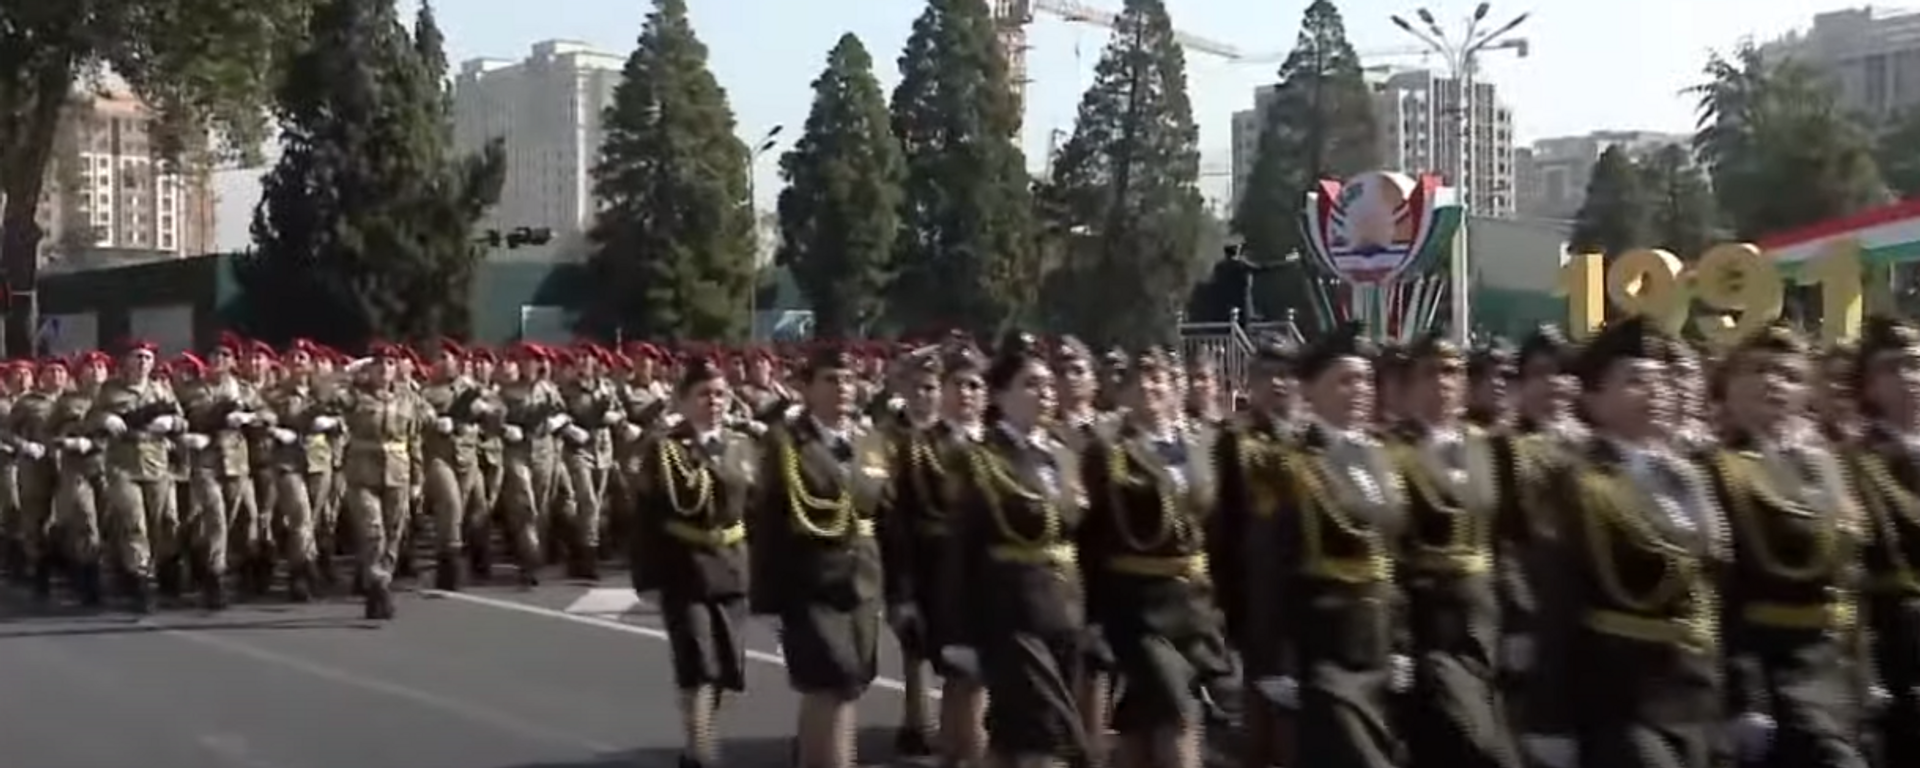 Военный парад в Душанбе 7 сентября 2021  - Sputnik Таджикистан, 1920, 07.09.2021